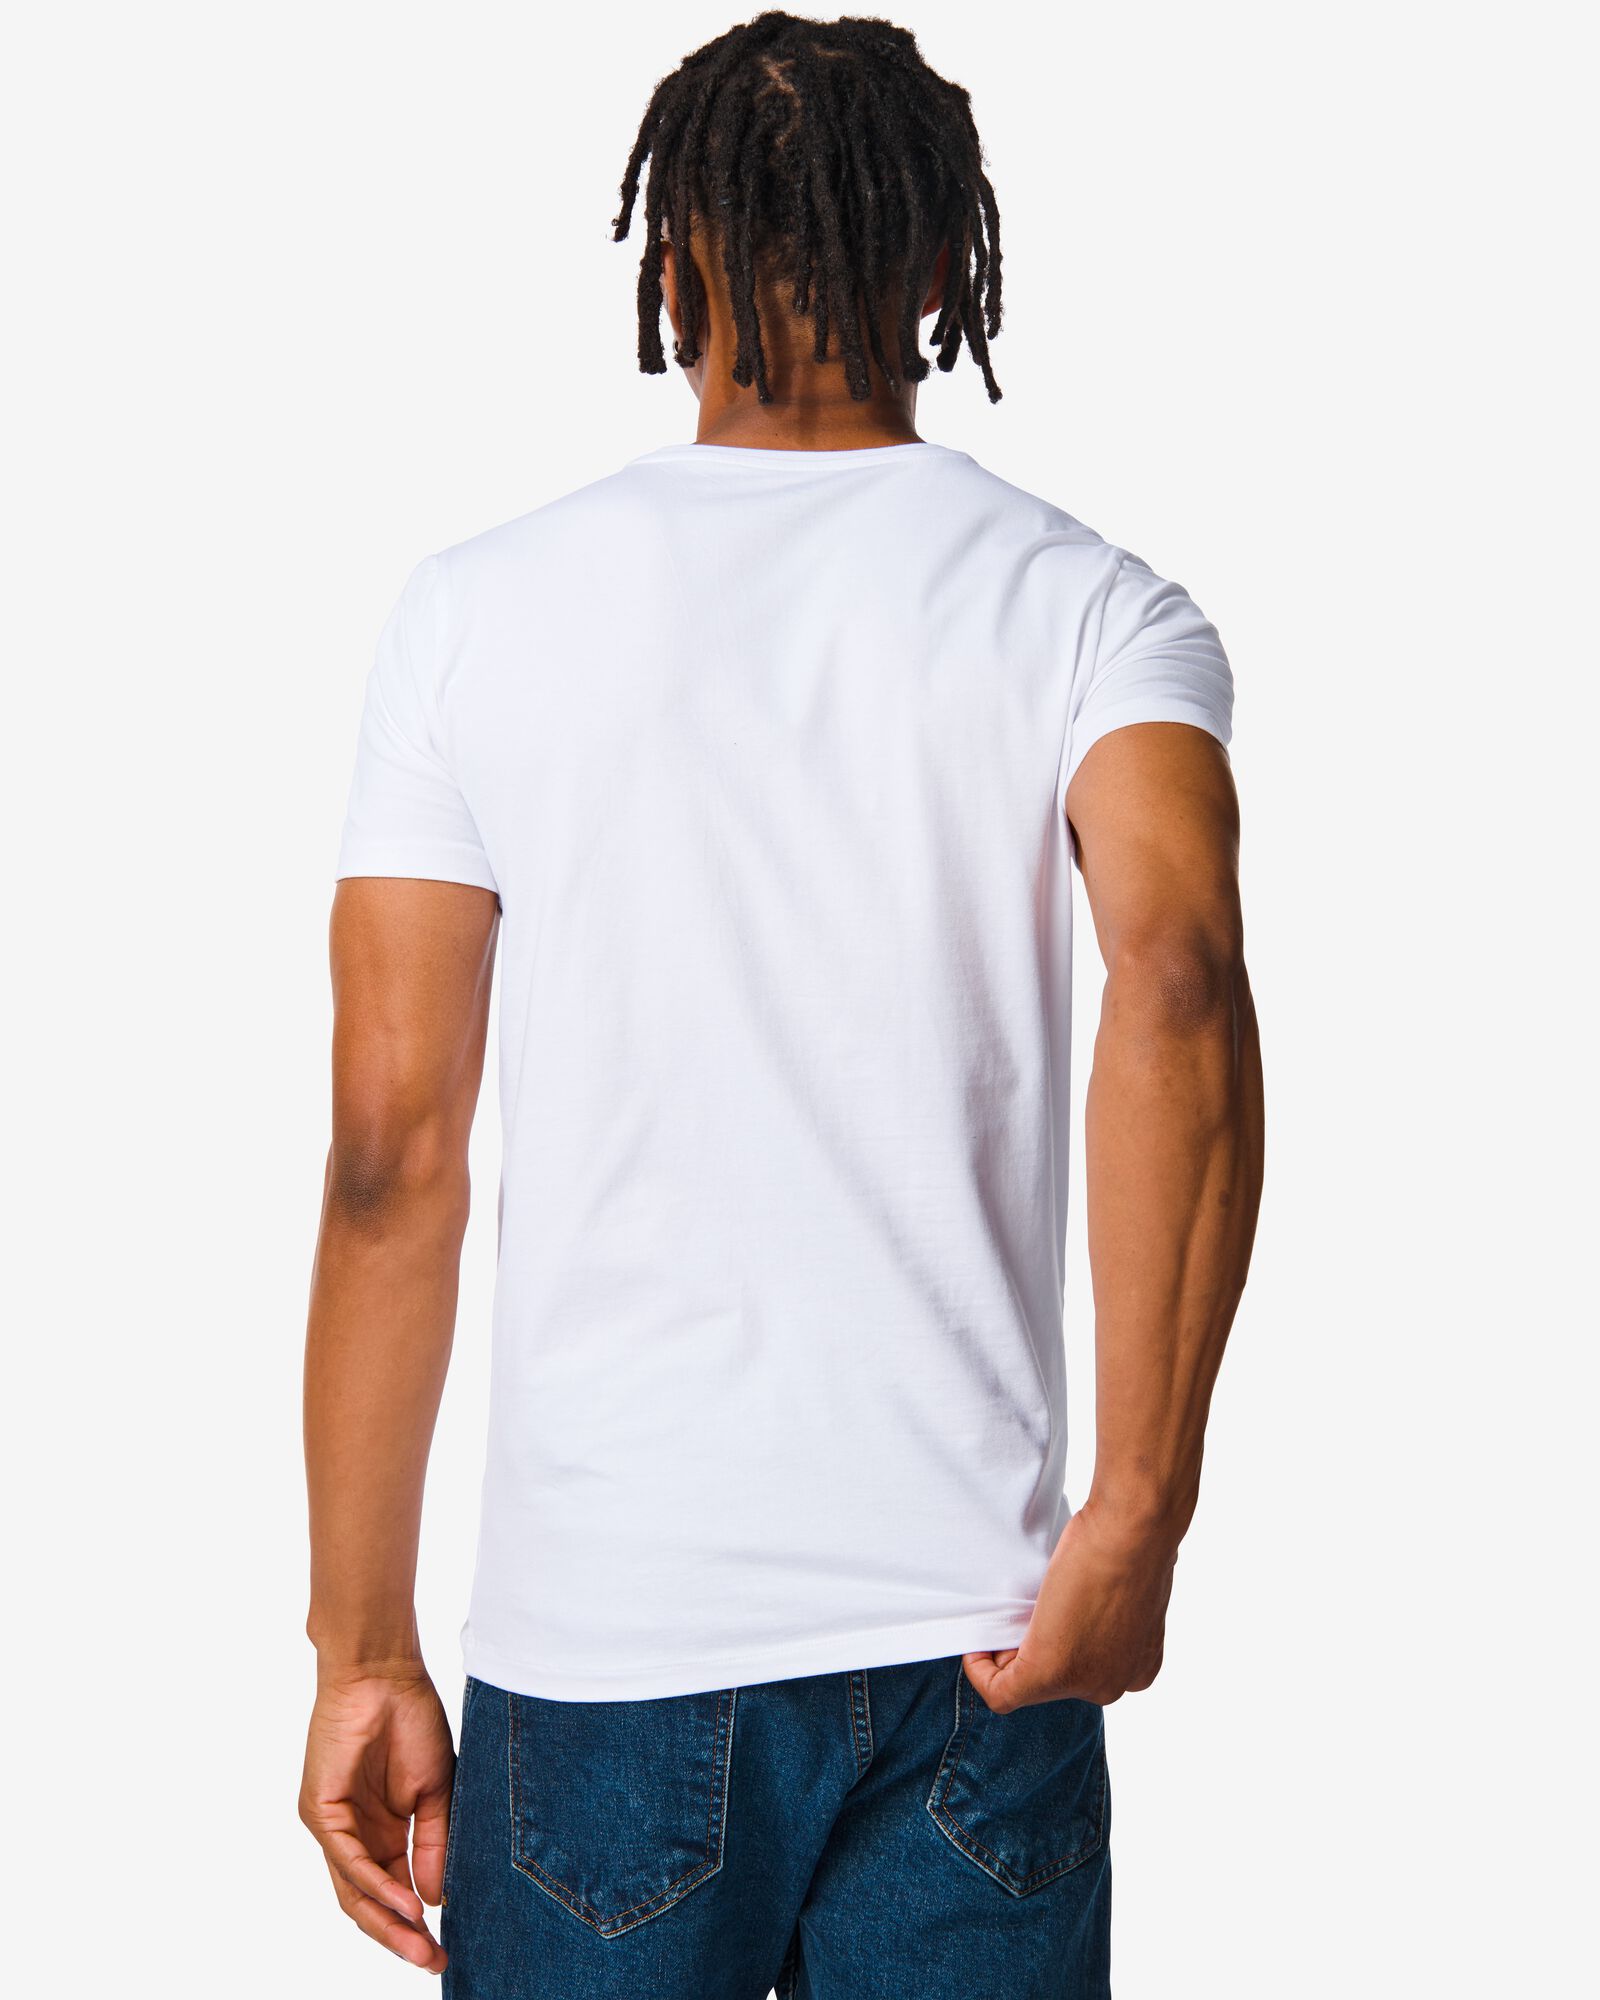 Herren-T-Shirt, Slim Fit, Rundhalsausschnitt weiß weiß - 1000009947 - HEMA